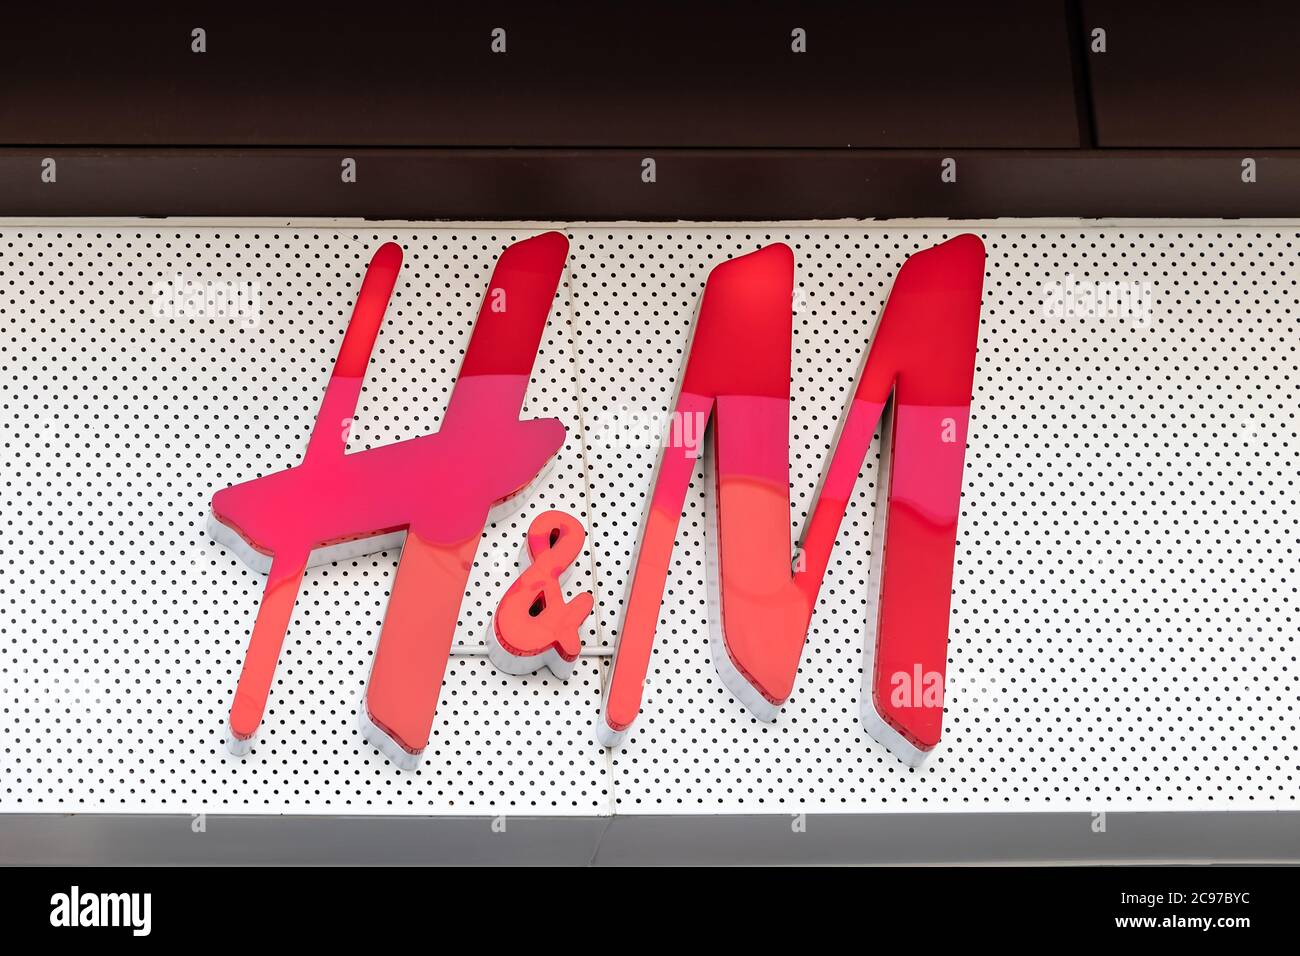 Huelva, Spagna - 27 luglio 2020: Logo del negozio H&M sopra un negozio nel centro commerciale Holea. H & M Hennes & Mauritz AB (H&M), è un'azienda di abbigliamento svedese. Foto Stock